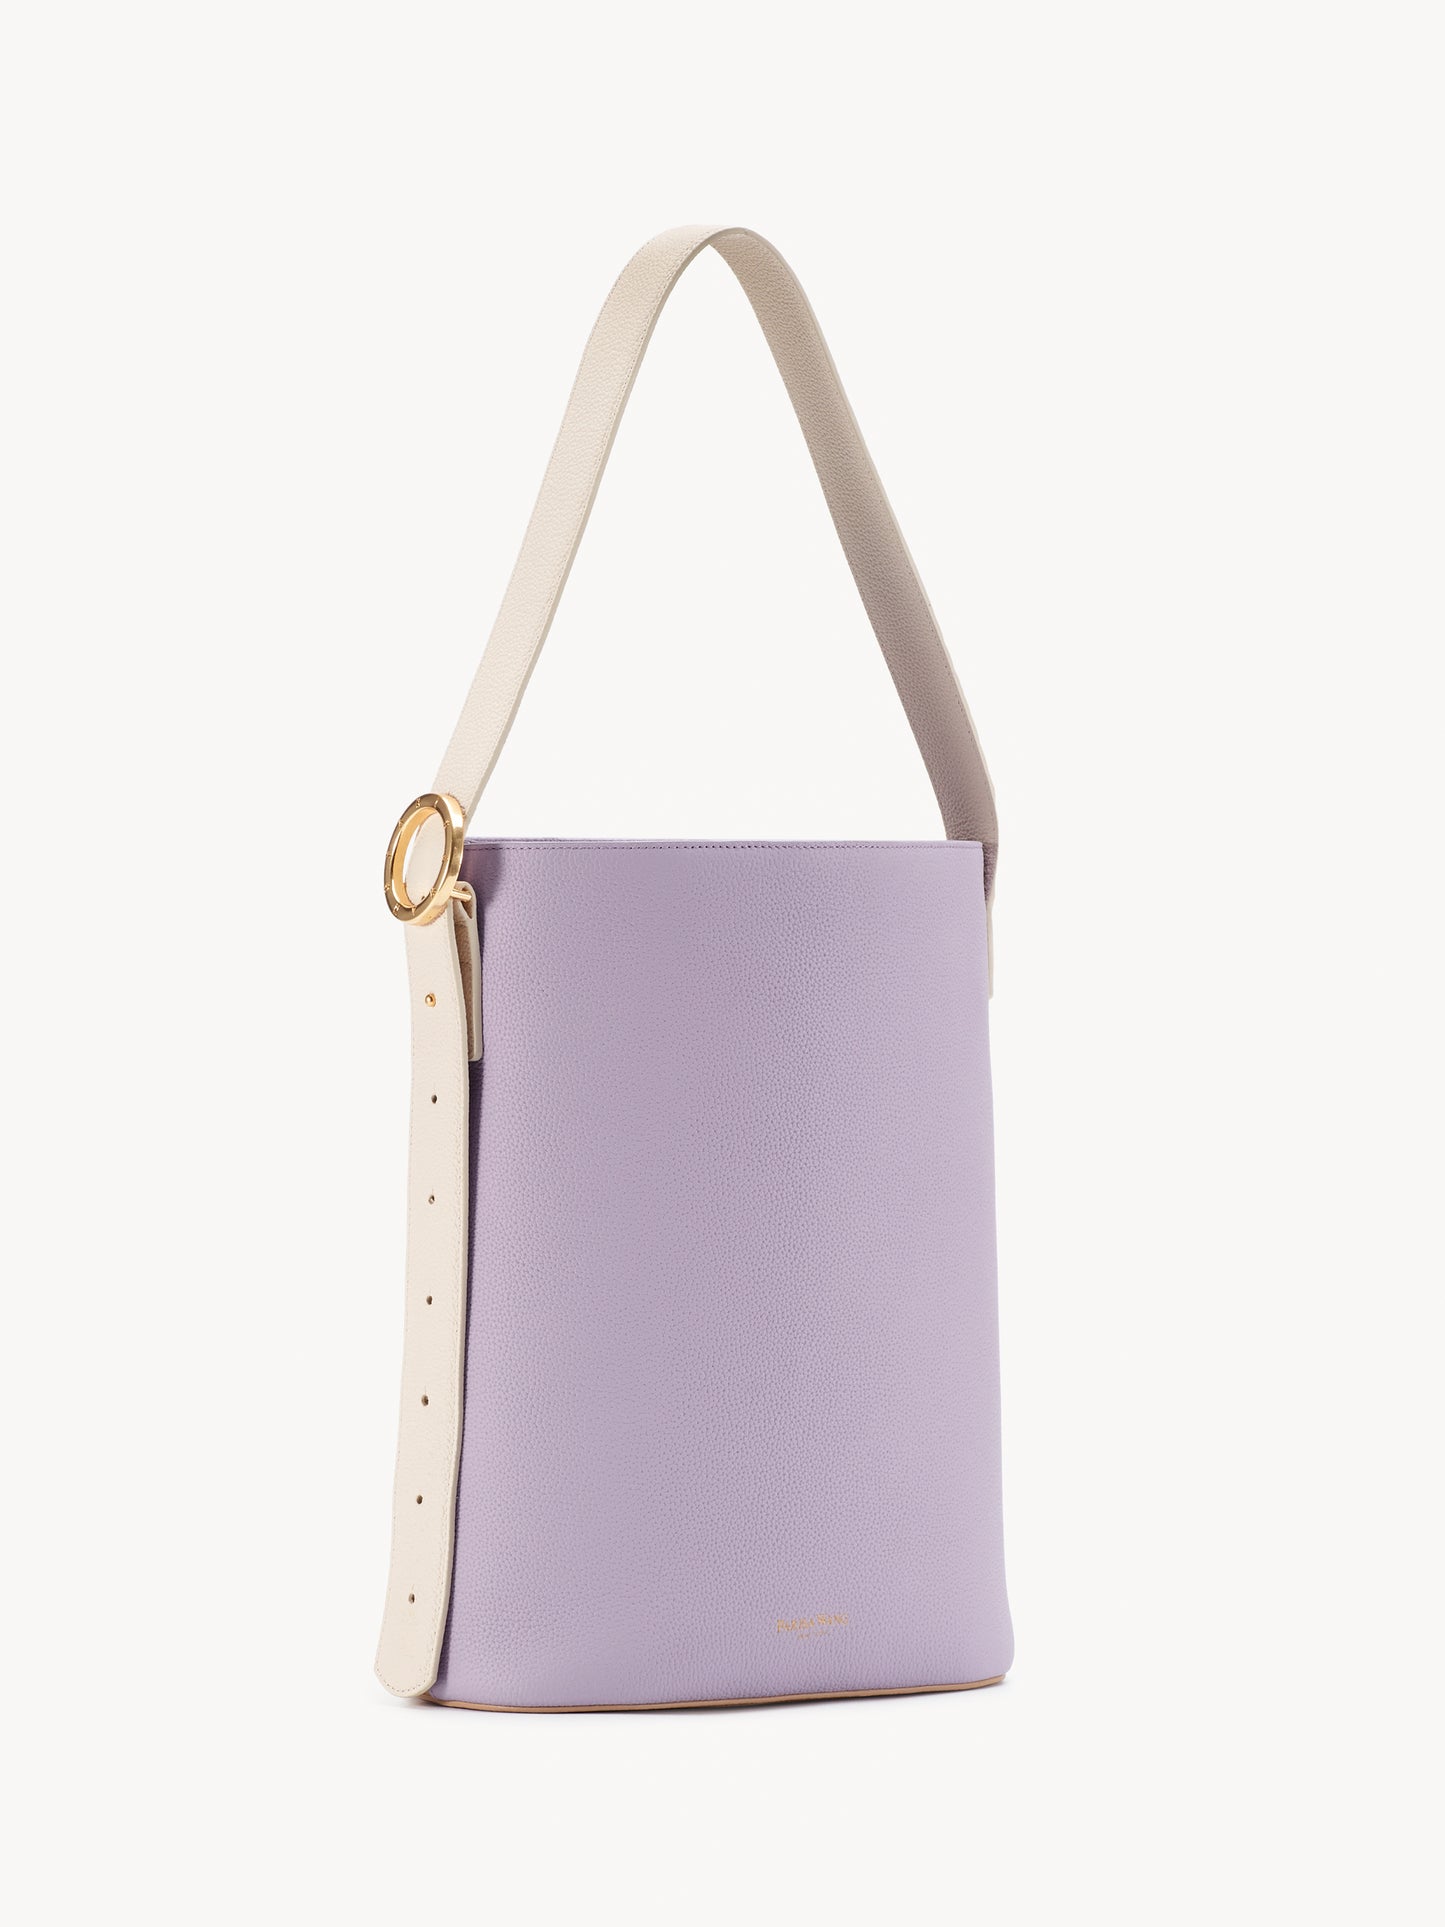 Allured Tote Bag in Lavender Peach | Parisa Wang 